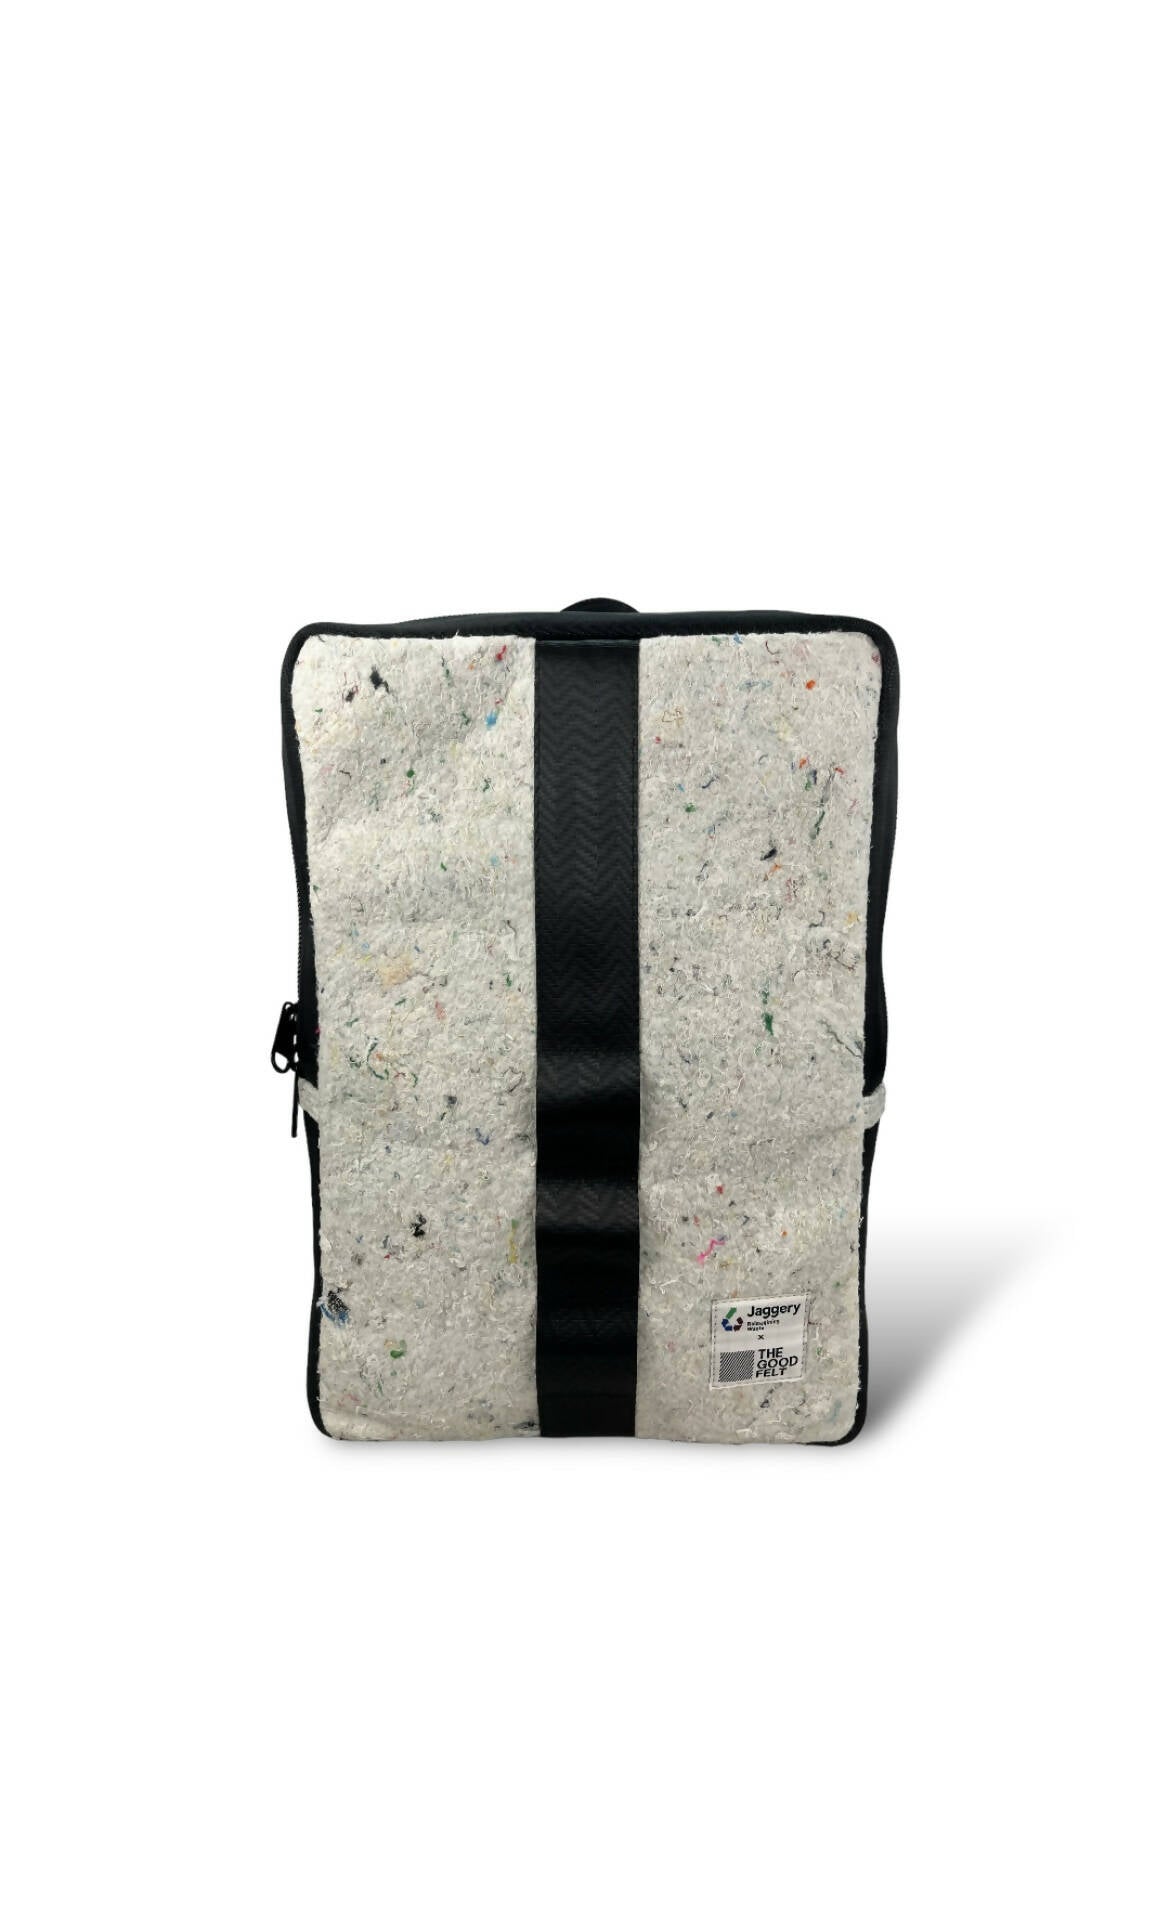 White & Black Laptop Backpack